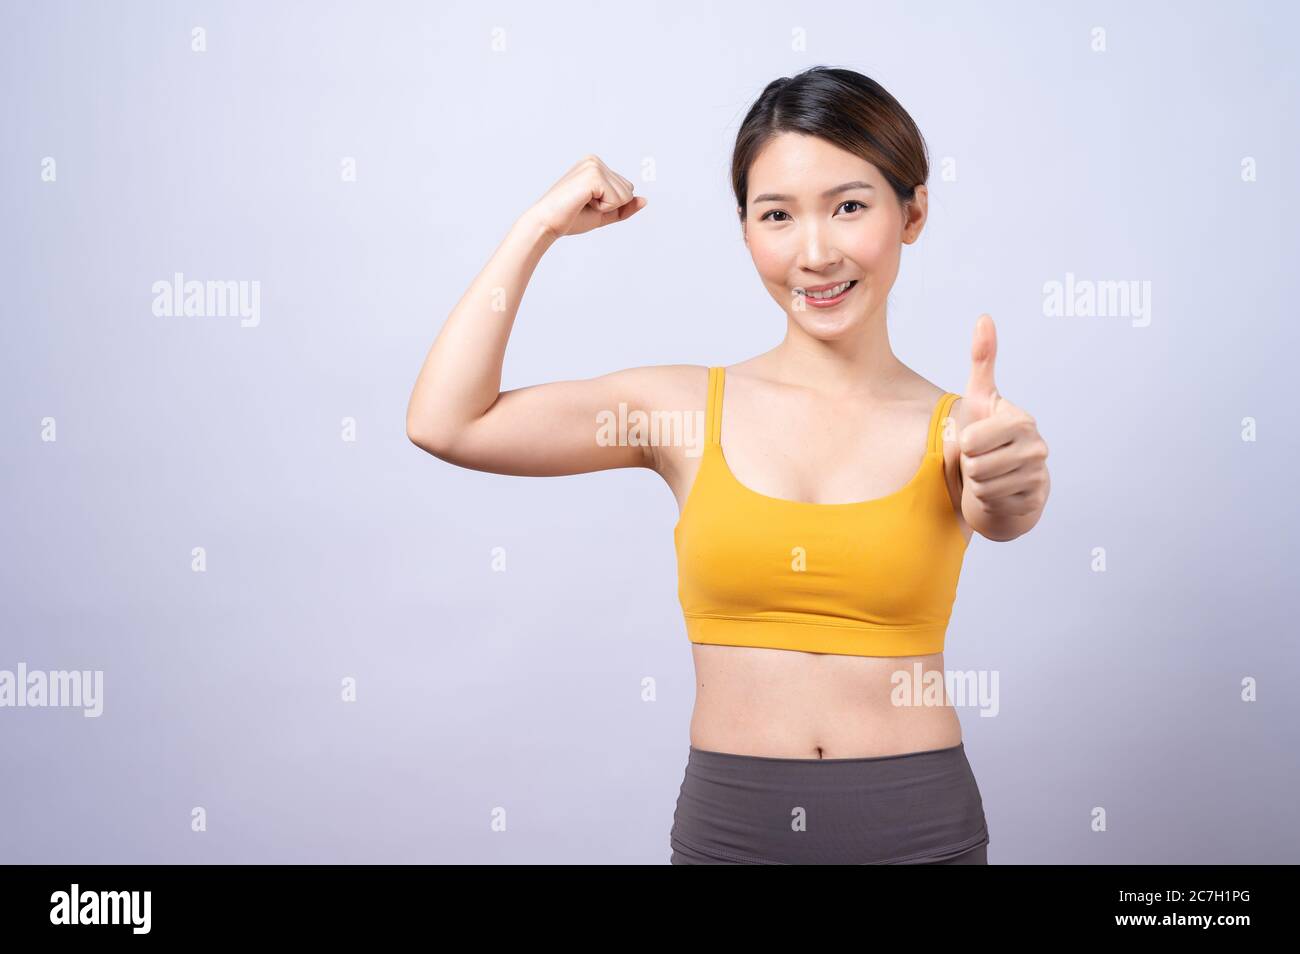 Portrait der asiatischen sportliche Frau geben Daumen nach oben isoliert auf weißem Hintergrund. Konzept der gesunden Lebensweise Stockfoto